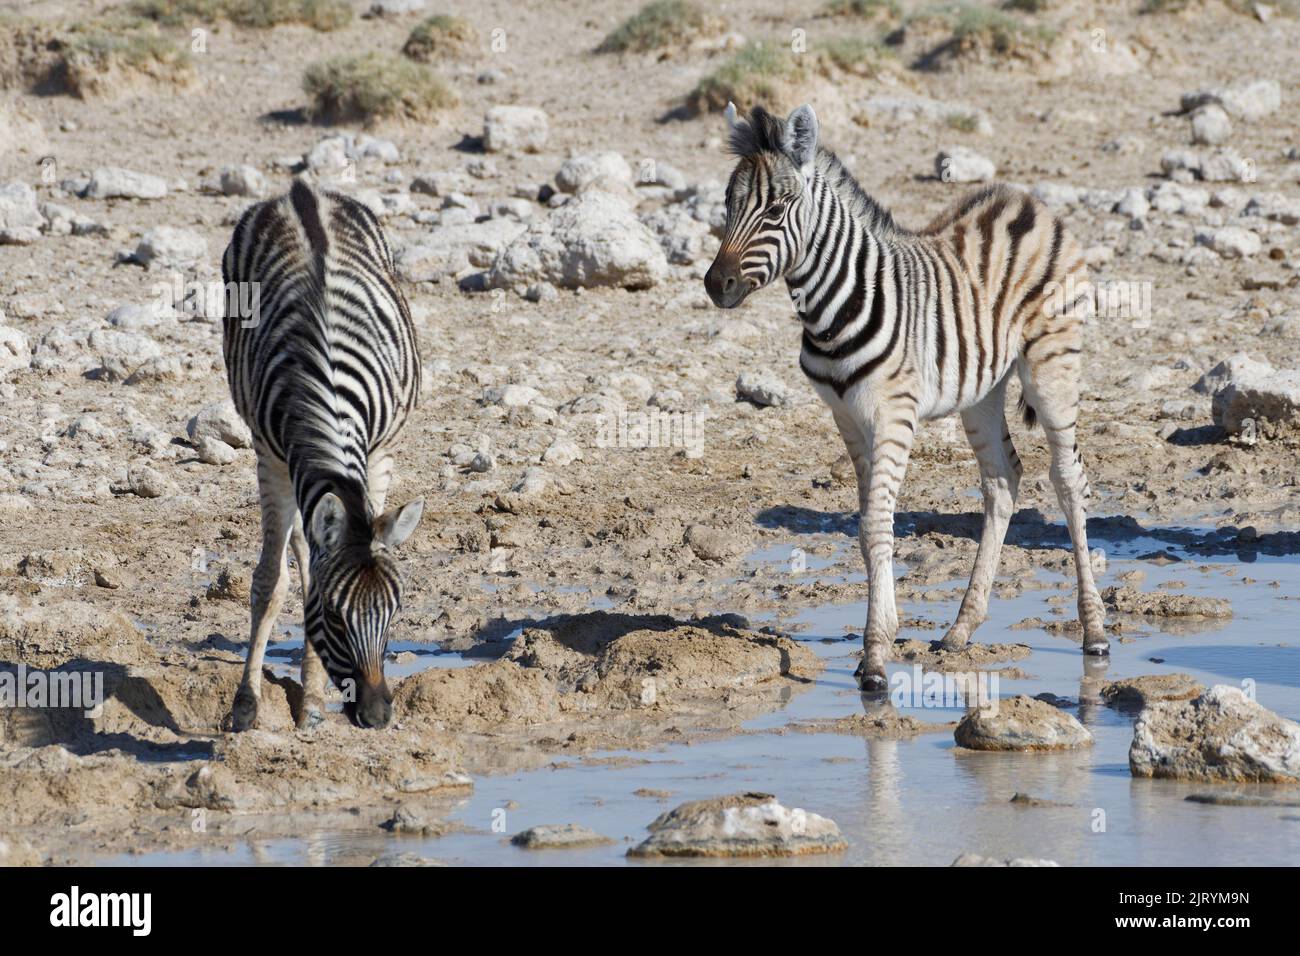 Burchells zebras (Equus quagga burchellii), two zebra foals at waterhole, Etosha National Park, Namibia, Africa Stock Photo